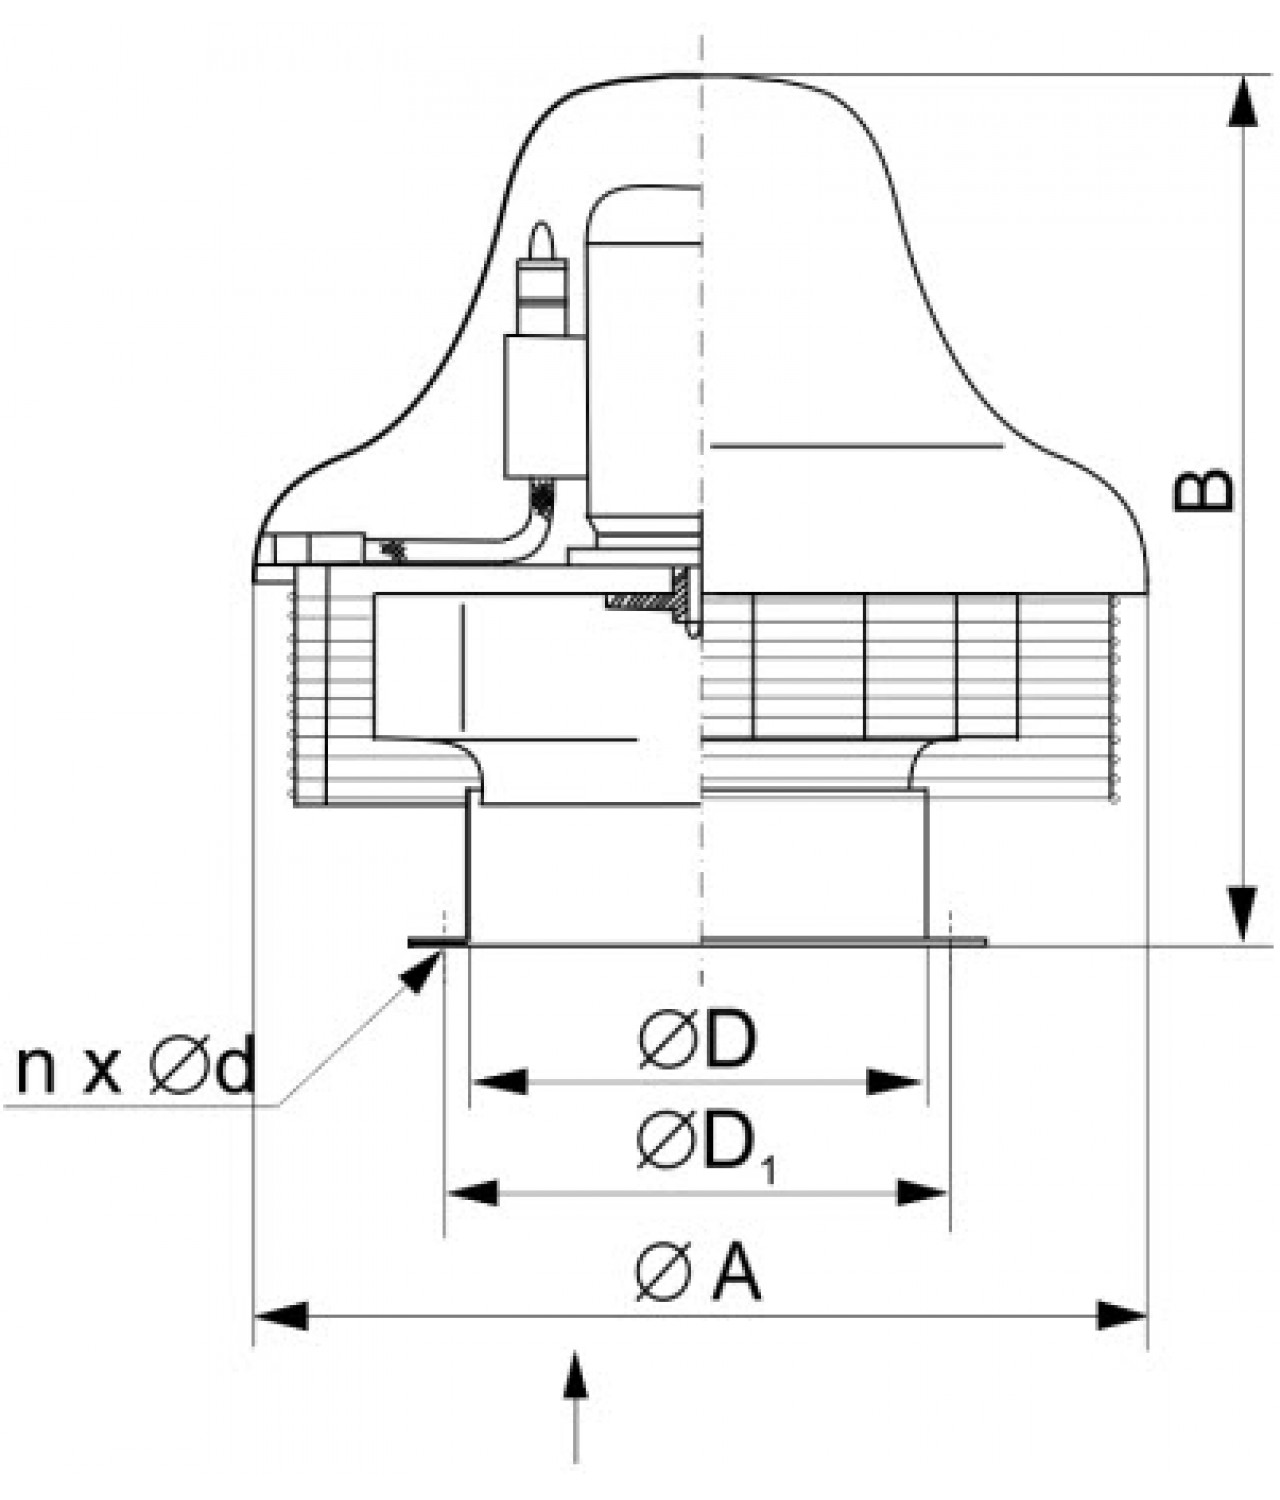 Išcentriniai stoginiai ventiliatoriai SVPFD ≤20520 m³/h - brėžinys